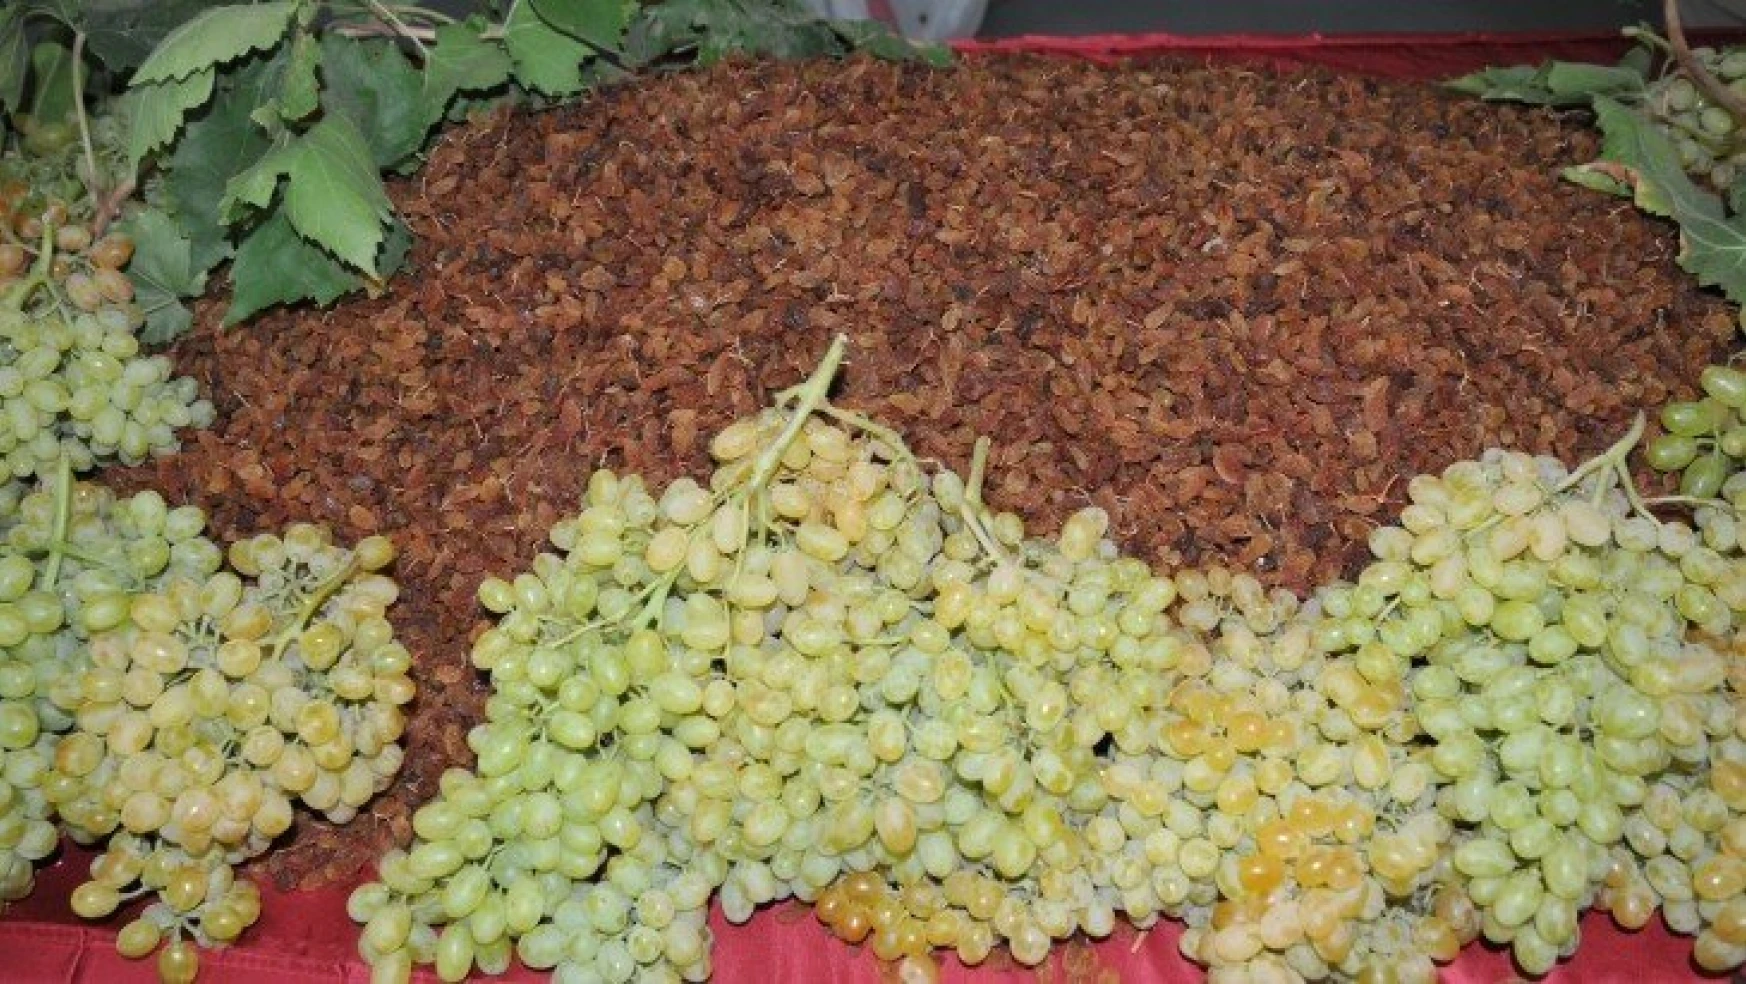 Üretici ve ihracatçı el ele Türk üzümünü zirveye taşıdı